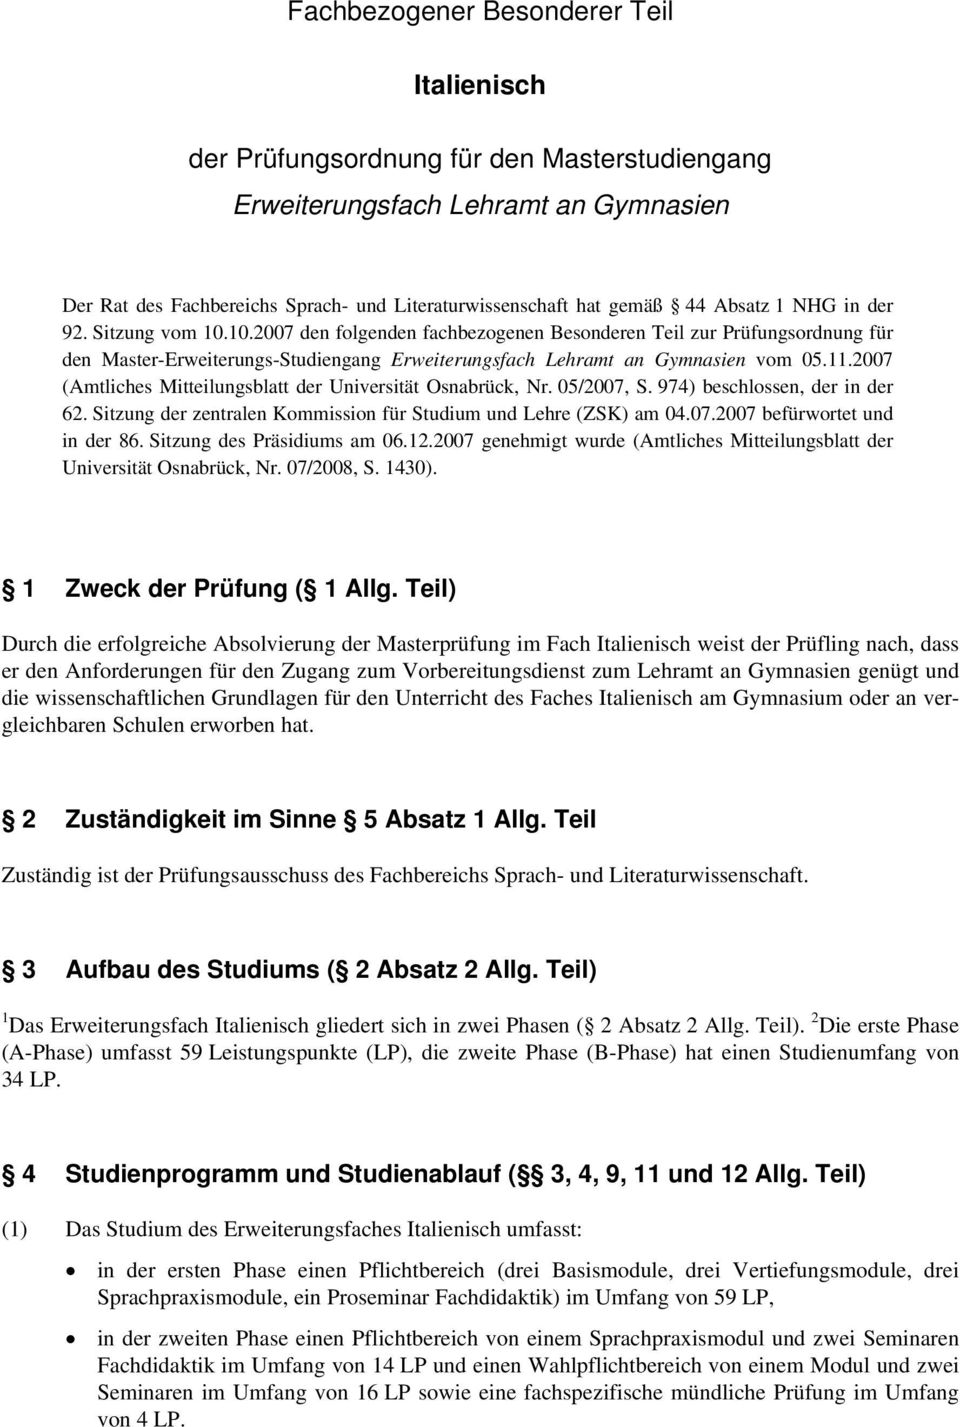 2007 (Amtliches Mitteilungsblatt der Universität Osnabrück, Nr. 05/2007, S. 974) beschlossen, der in der 62. Sitzung der zentralen Kommission für Studium und Lehre (ZSK) am 04.07.2007 befürwortet und in der 86.